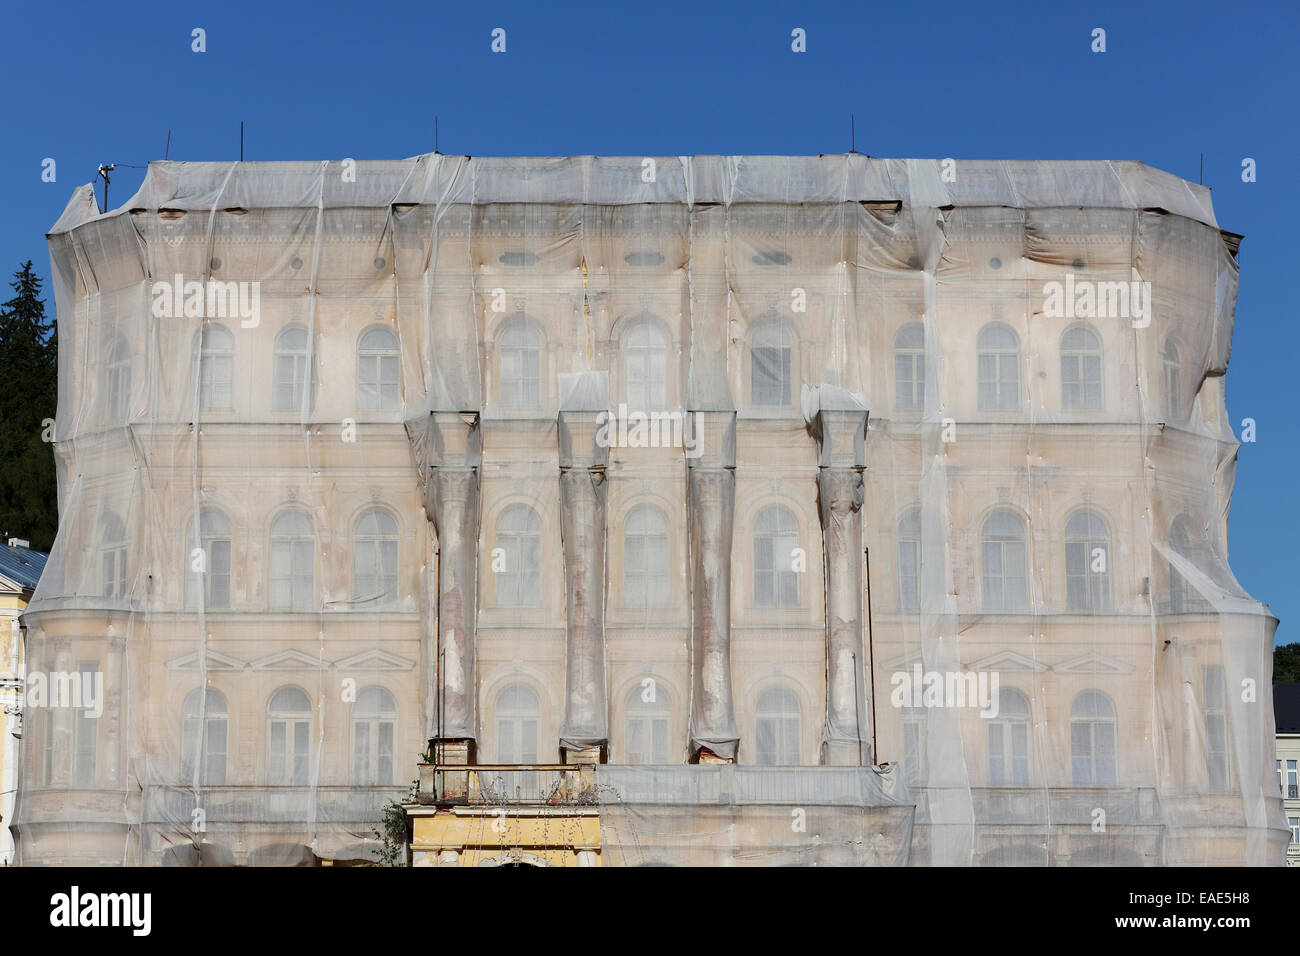 Facciata di un edificio storico protetto con copertoni durante i lavori di ristrutturazione, Mariánské Lázně, Regione di Karlovy Vary, Boemia Foto Stock